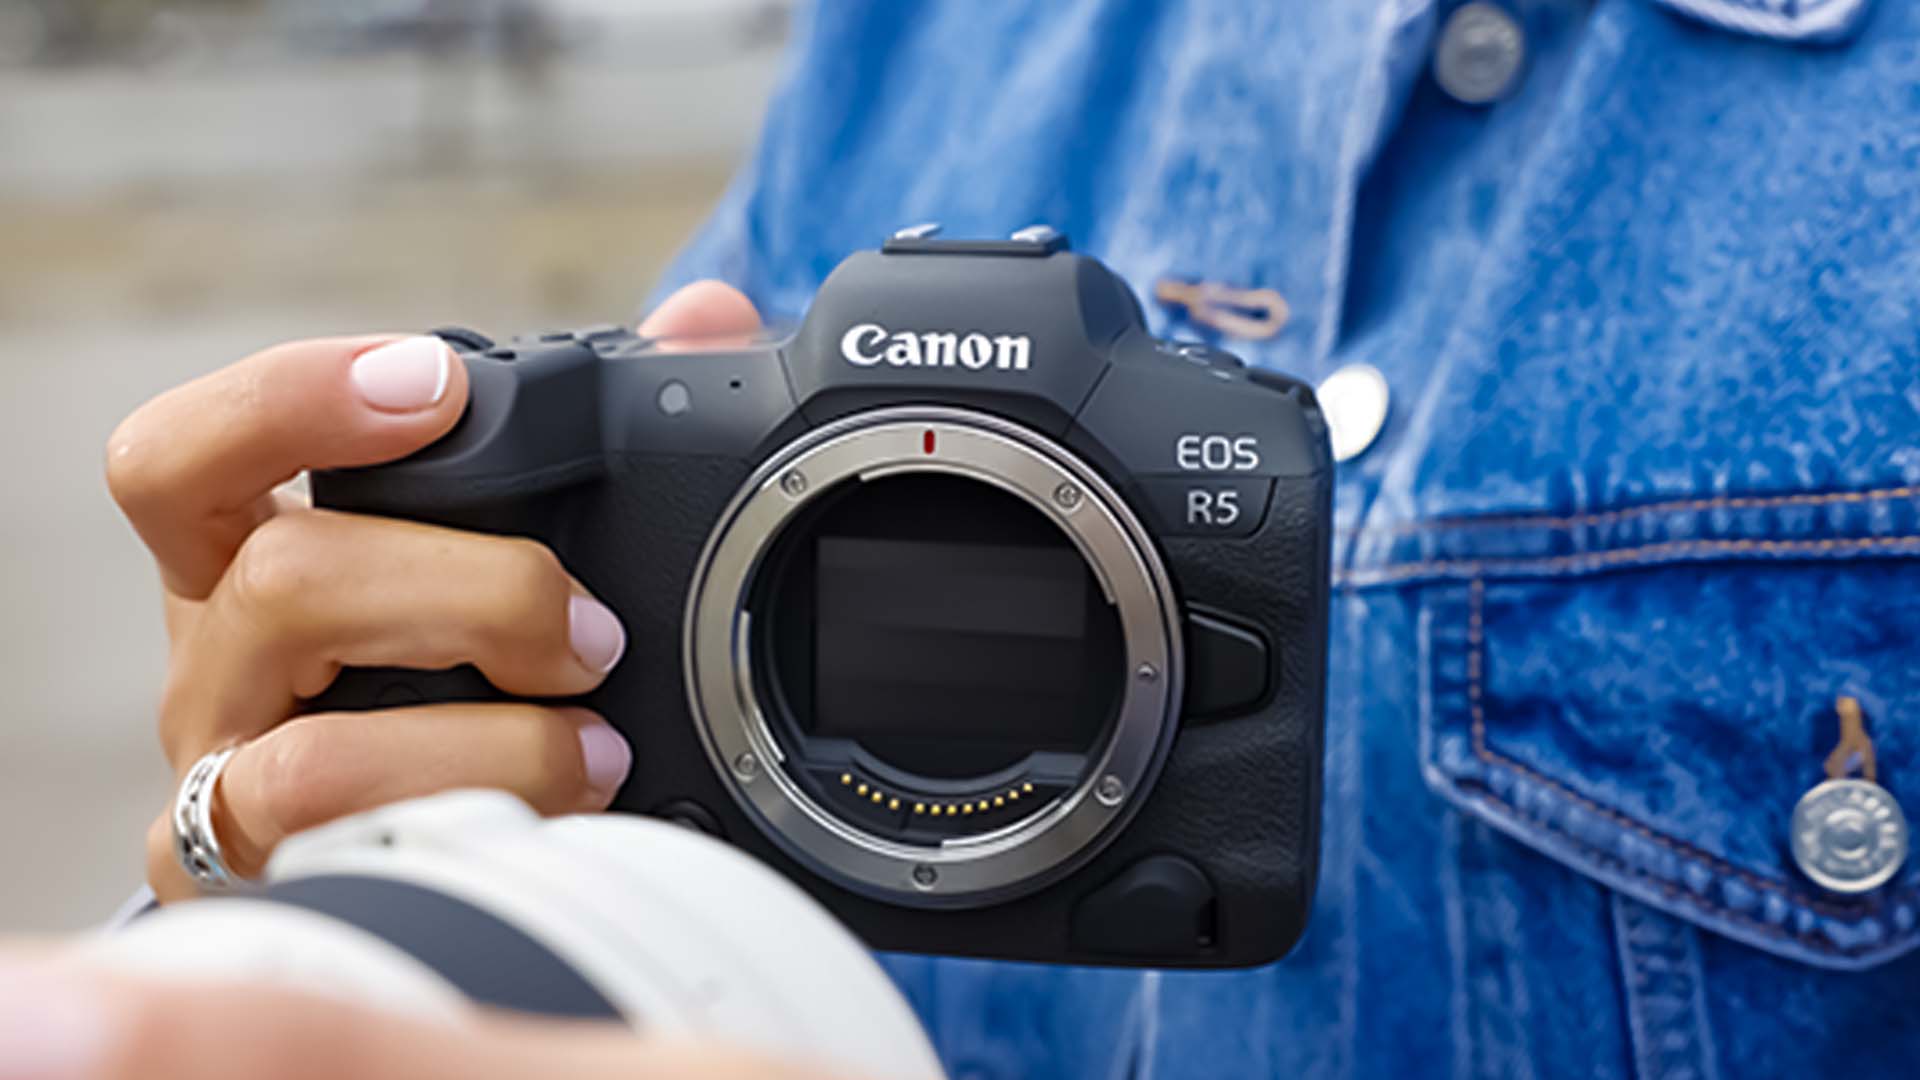 كانون Canon تحدث برمجيات نظام R وتكسبها مزيداً من السرعة والقدرة على التحمل